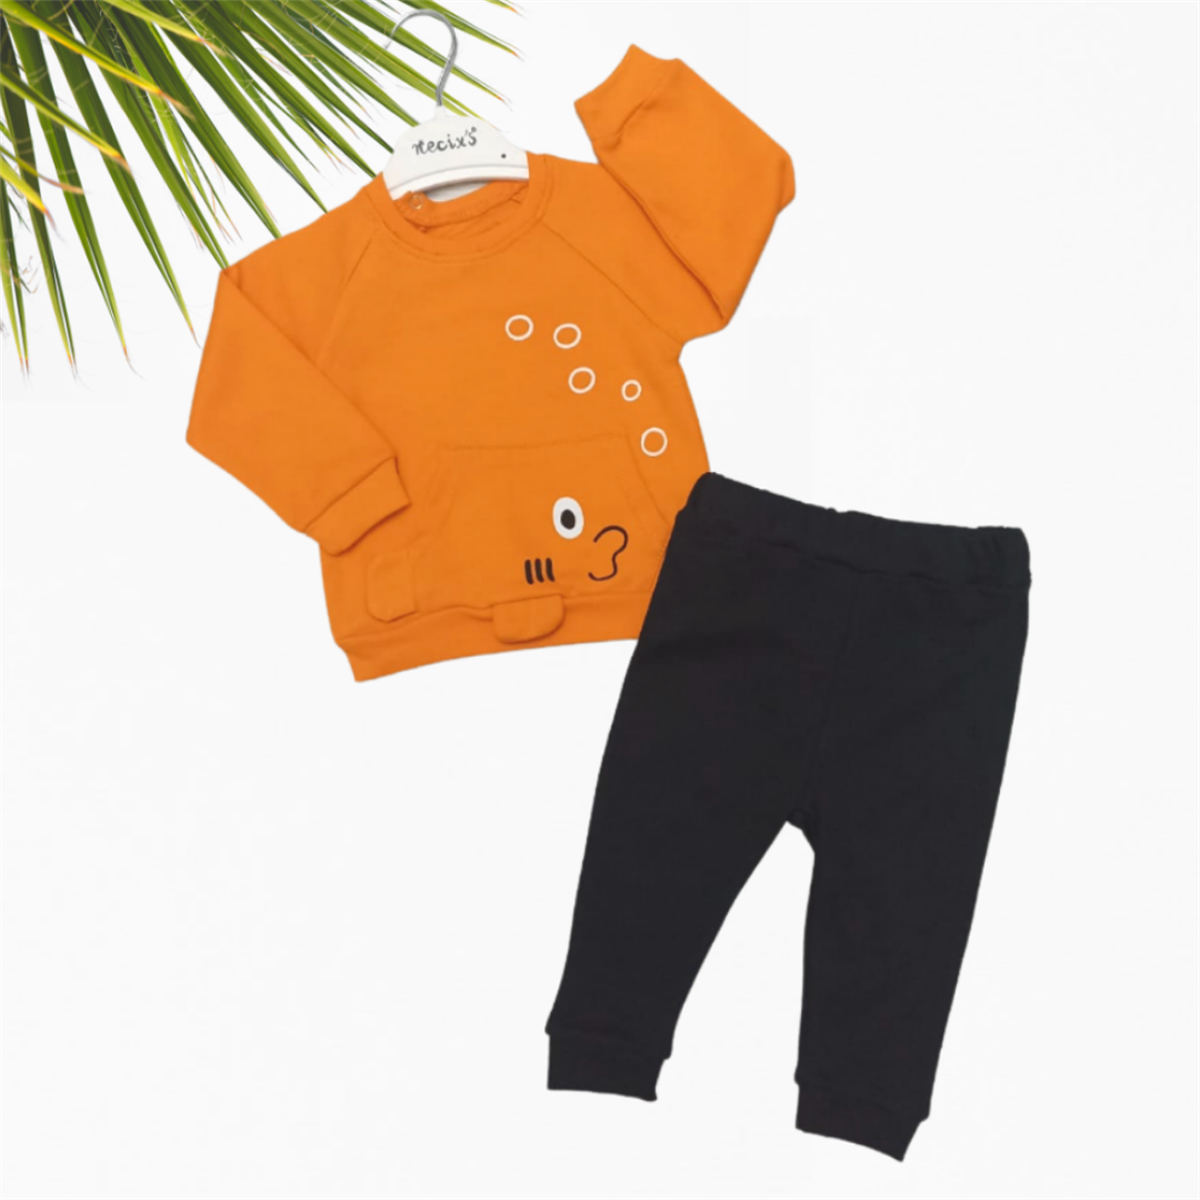 Bebek Giyim Markaları - Kız ve Erkek Bebek Kıyafetleri, Çocuk Giyim